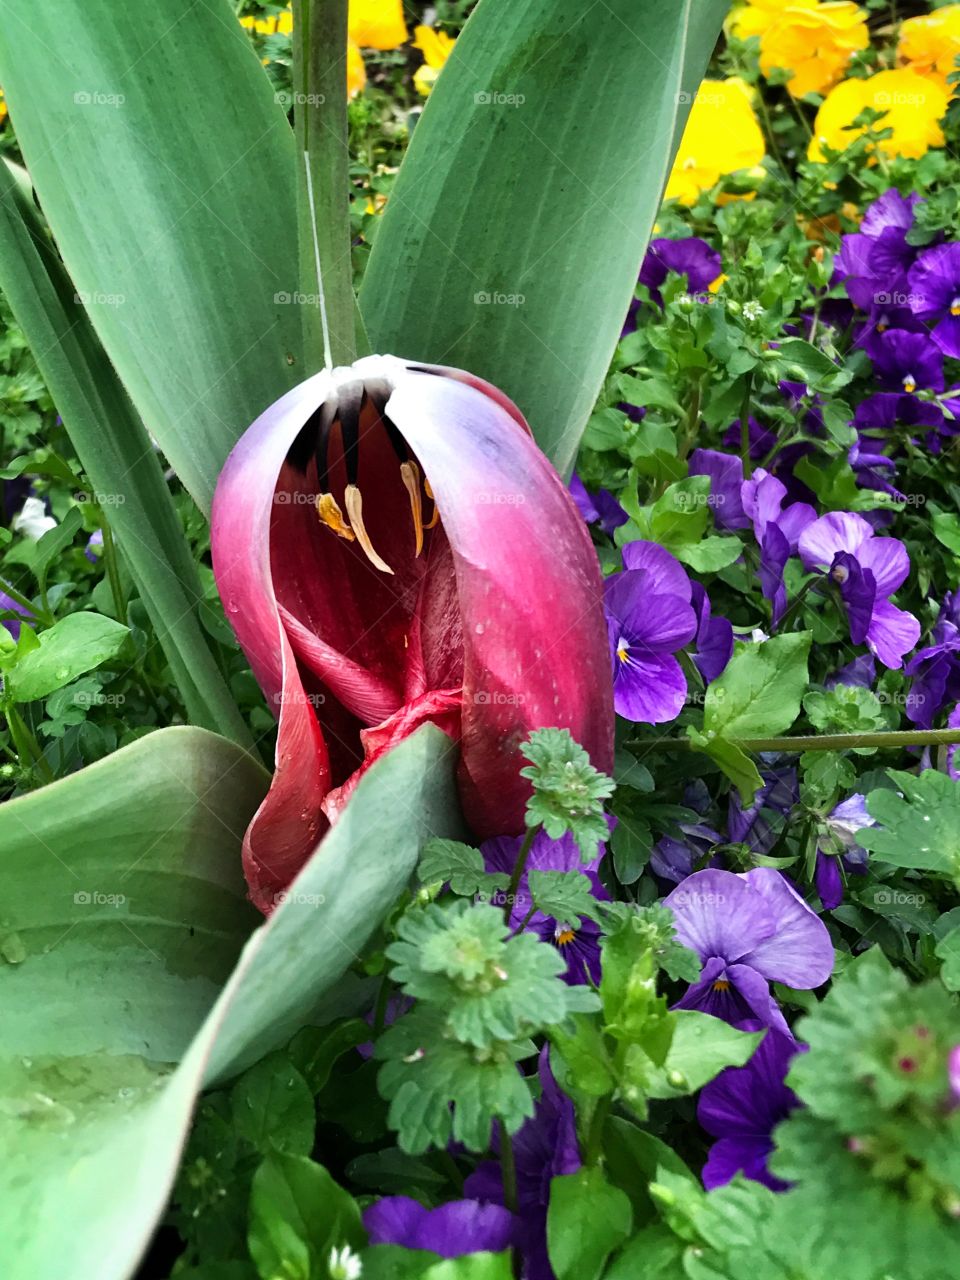 Death of a tulip 